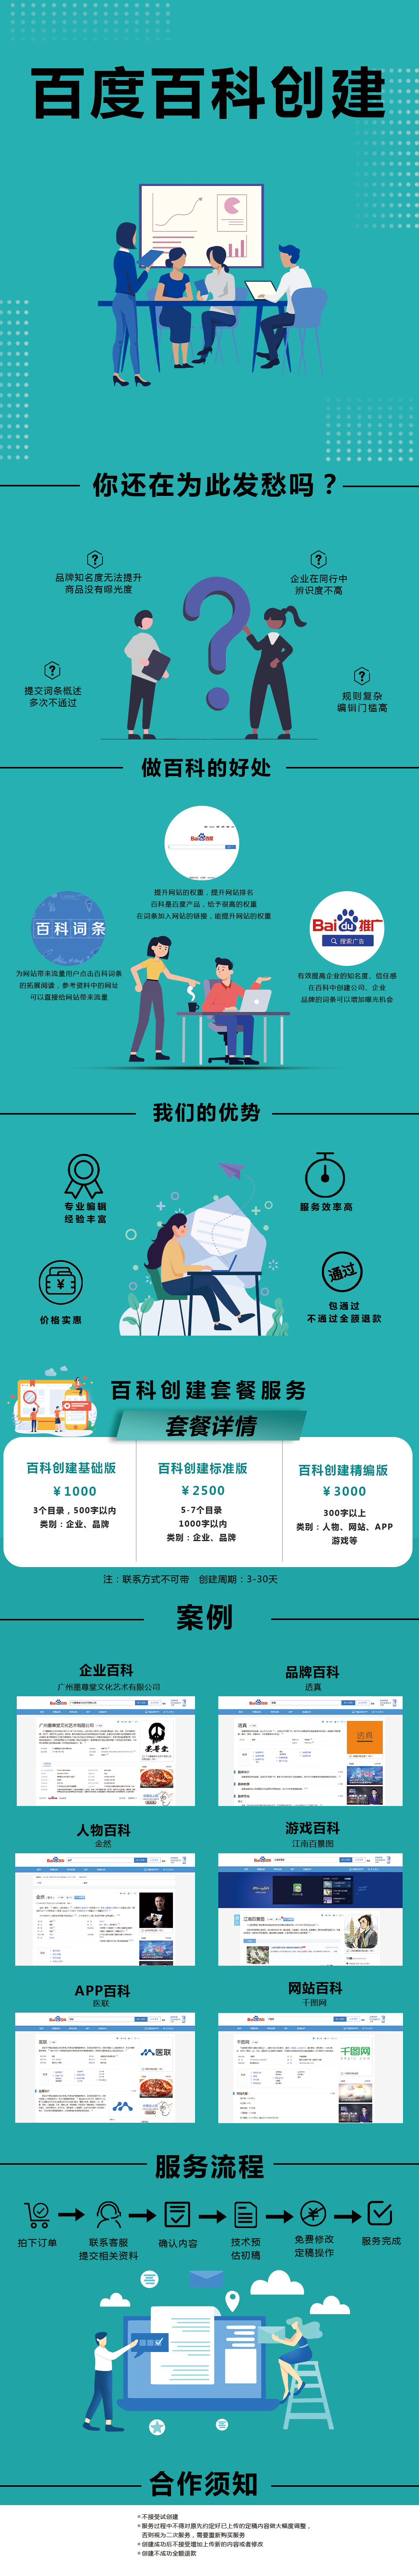 2020-12-8盈和动力&广州宝伦-百度百科创建服务.jpg